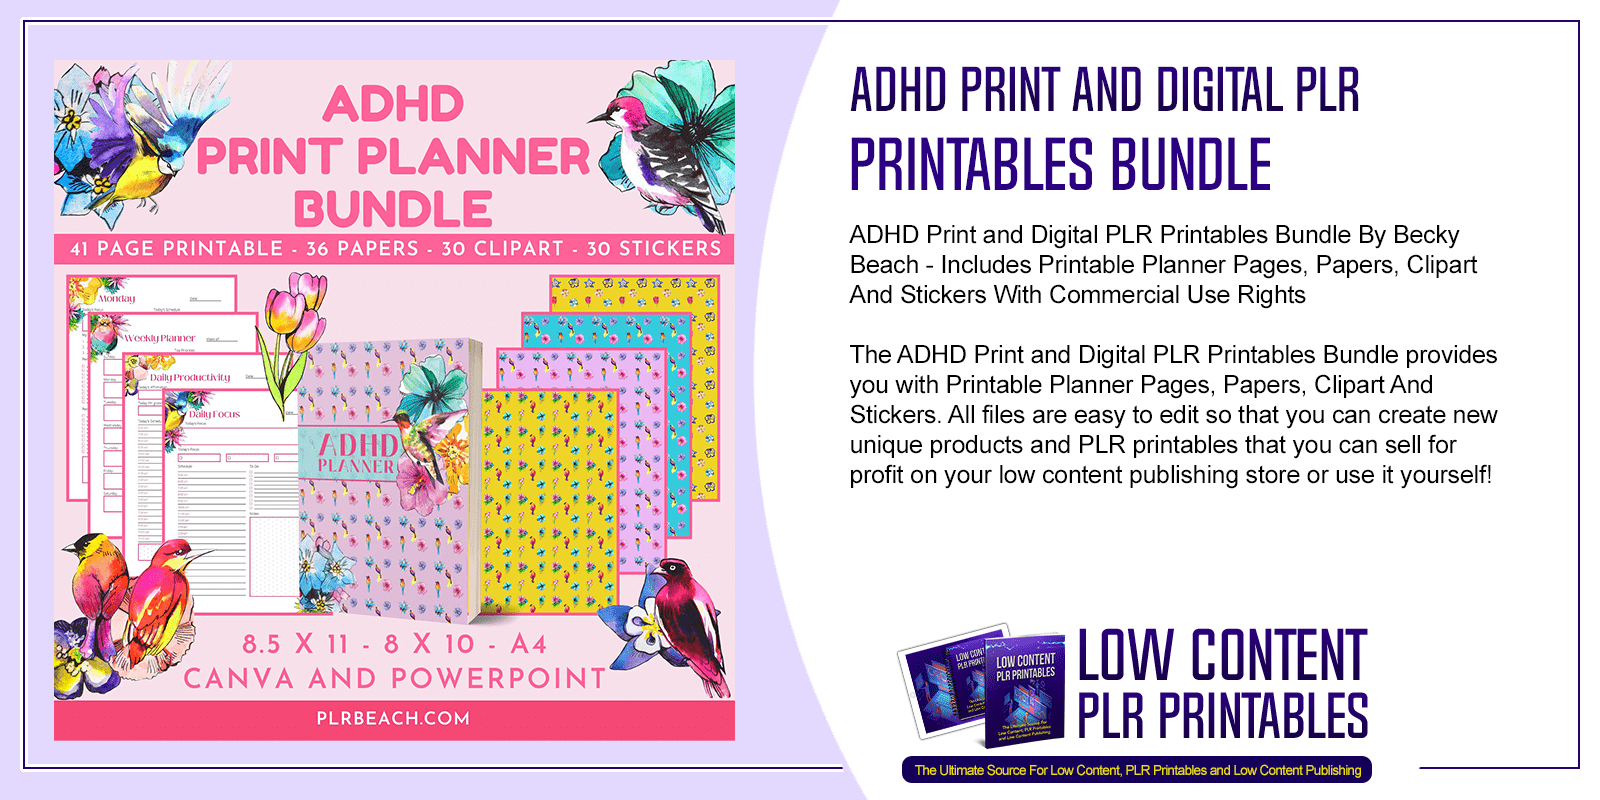 ADHD Print and Digital PLR Printables Bundle